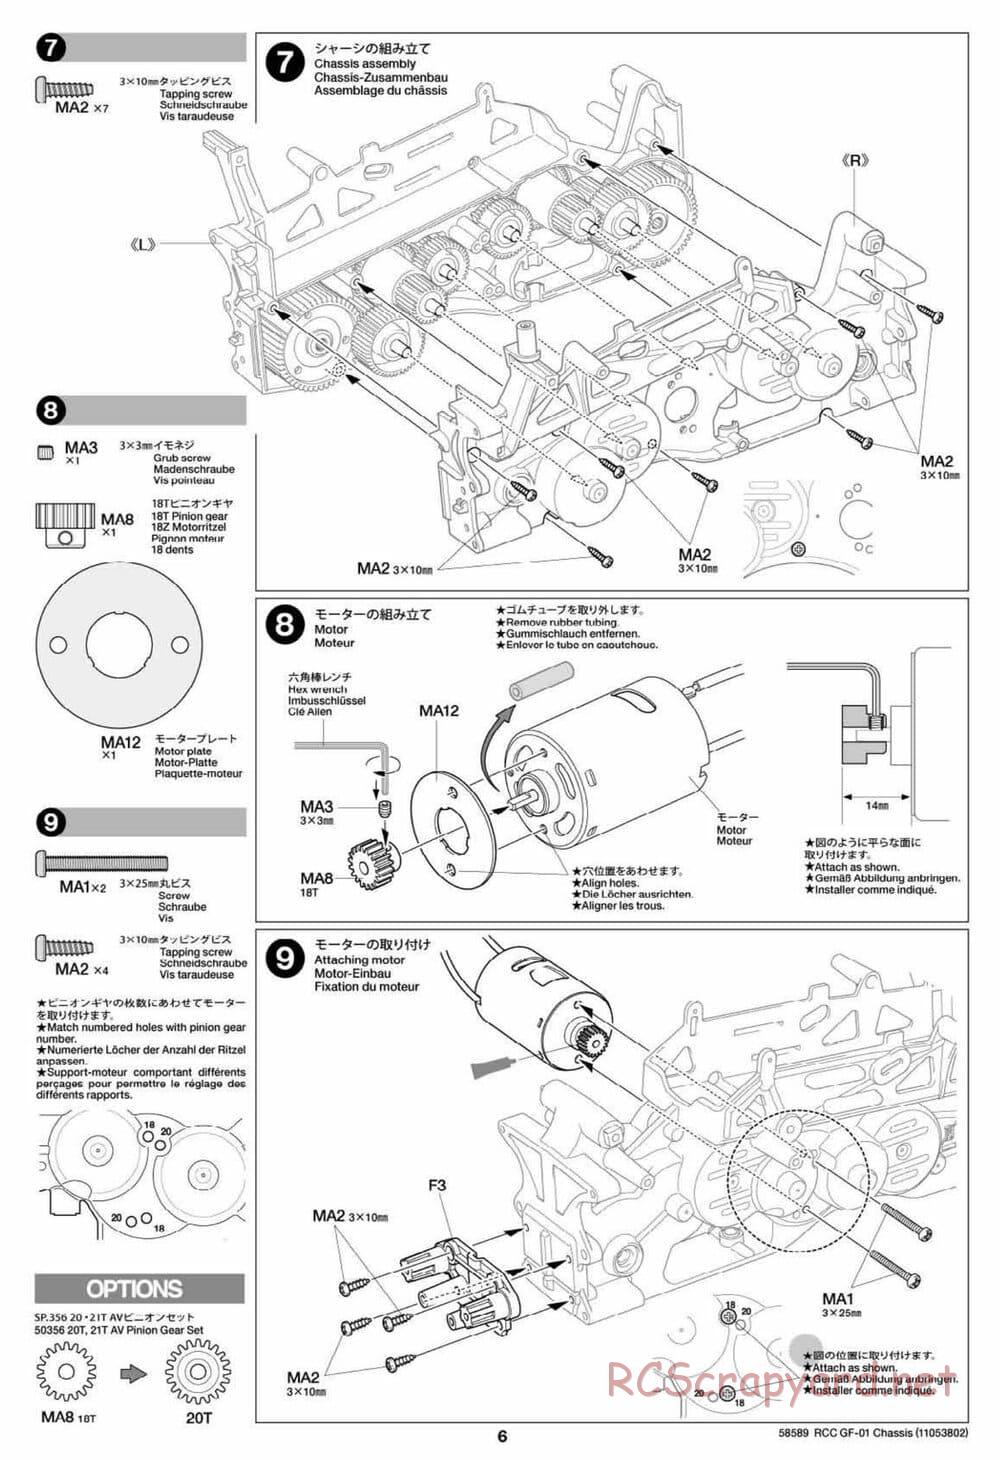 Tamiya - GF-01 Chassis - Manual - Page 6